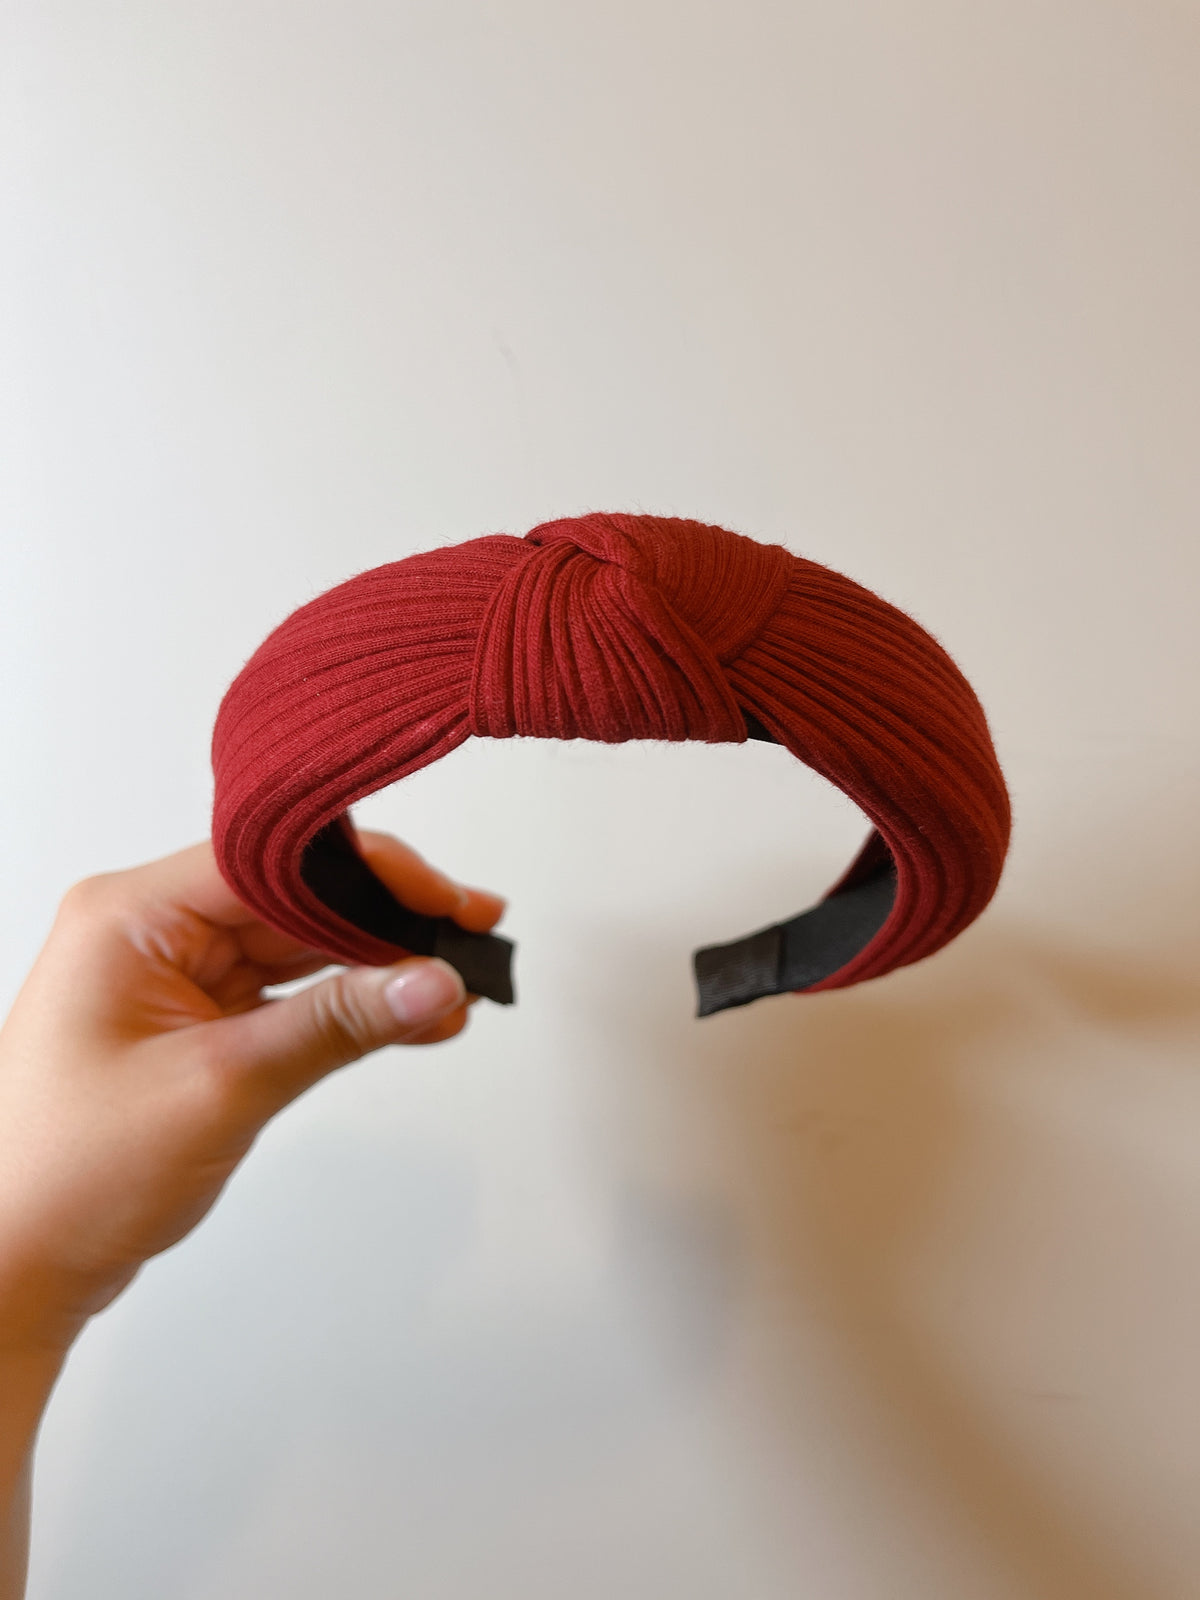 韓式人工髮箍- 淨色髮箍 (紅色)